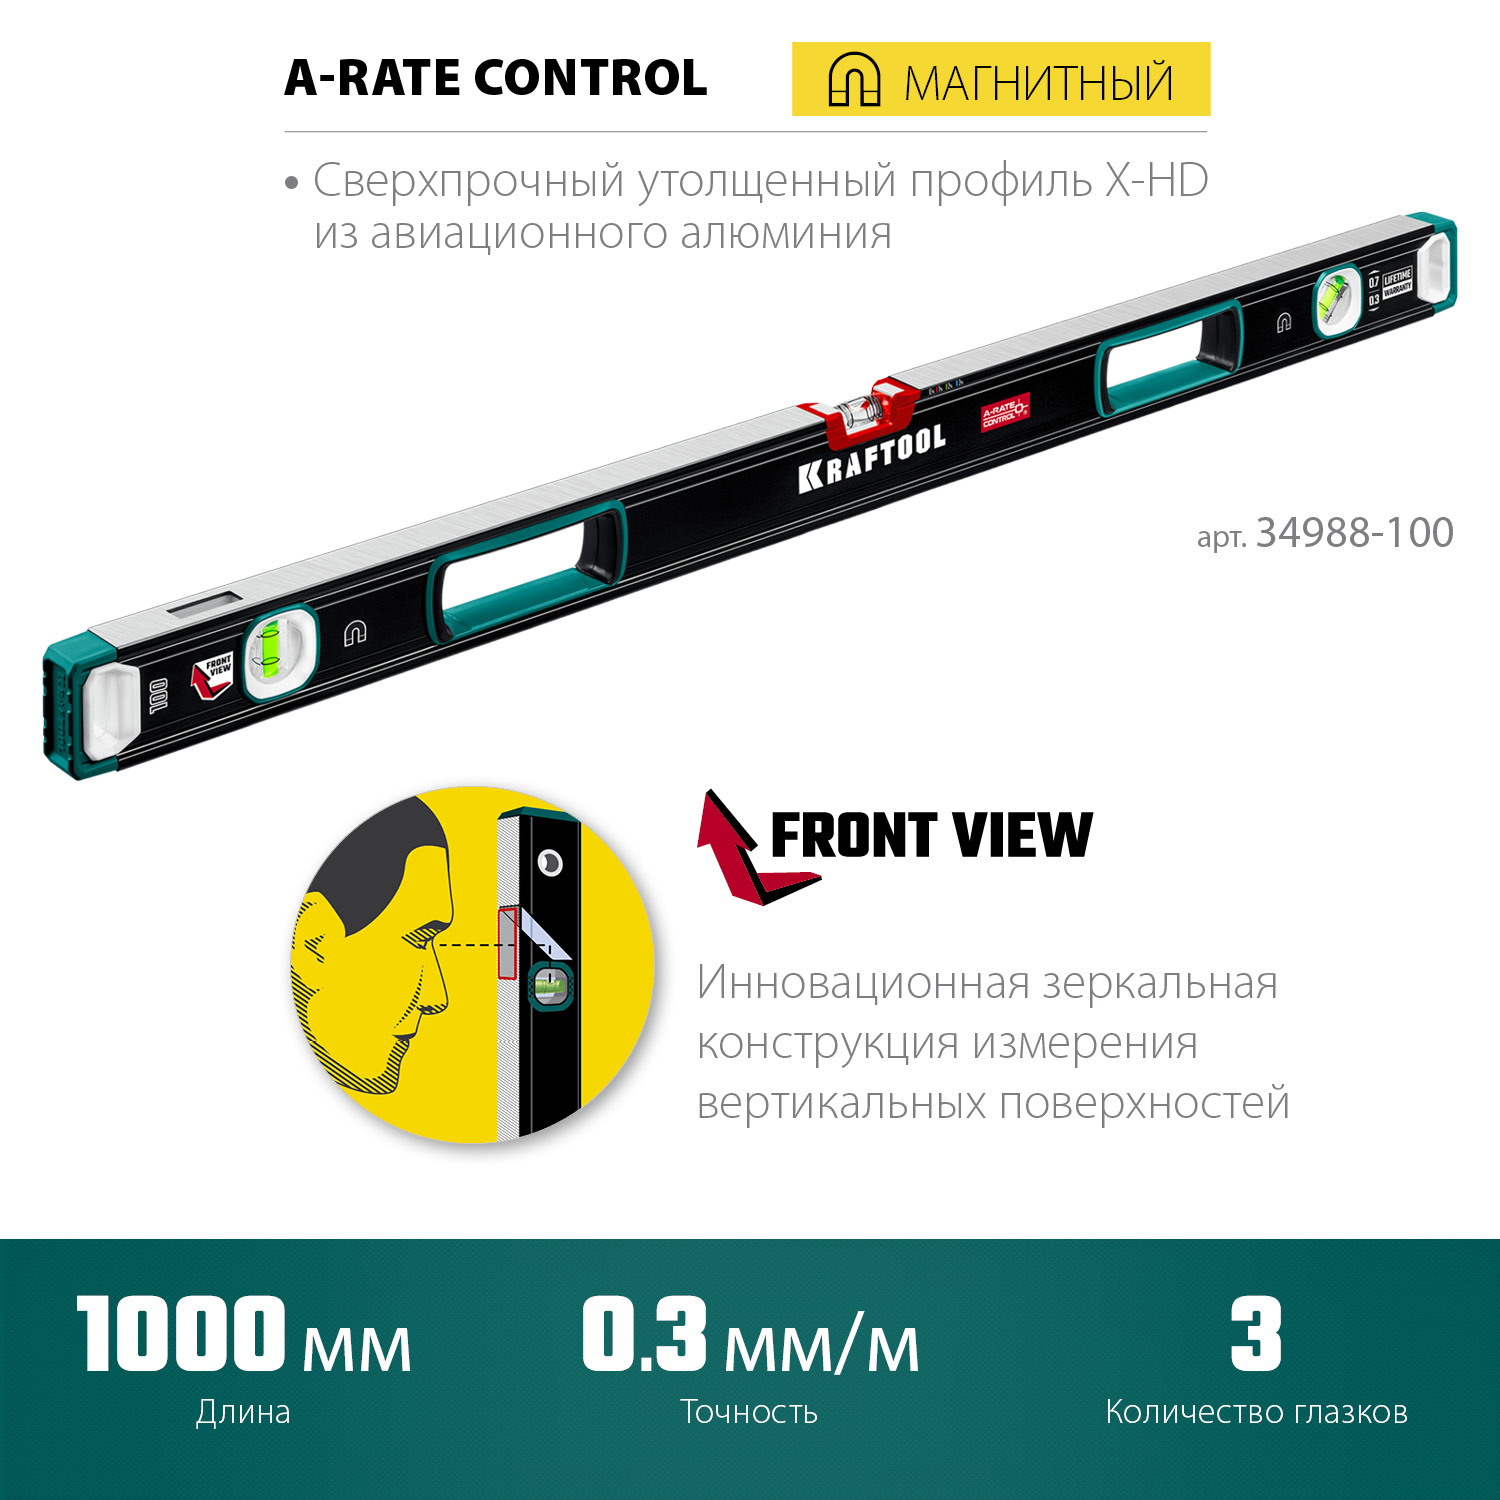 KRAFTOOL A-RATE CONTROL, 1000 мм, точность 0.3 мм/м, с зеркальным глазком, сверхпрочный магнитный уровень (34988-100)